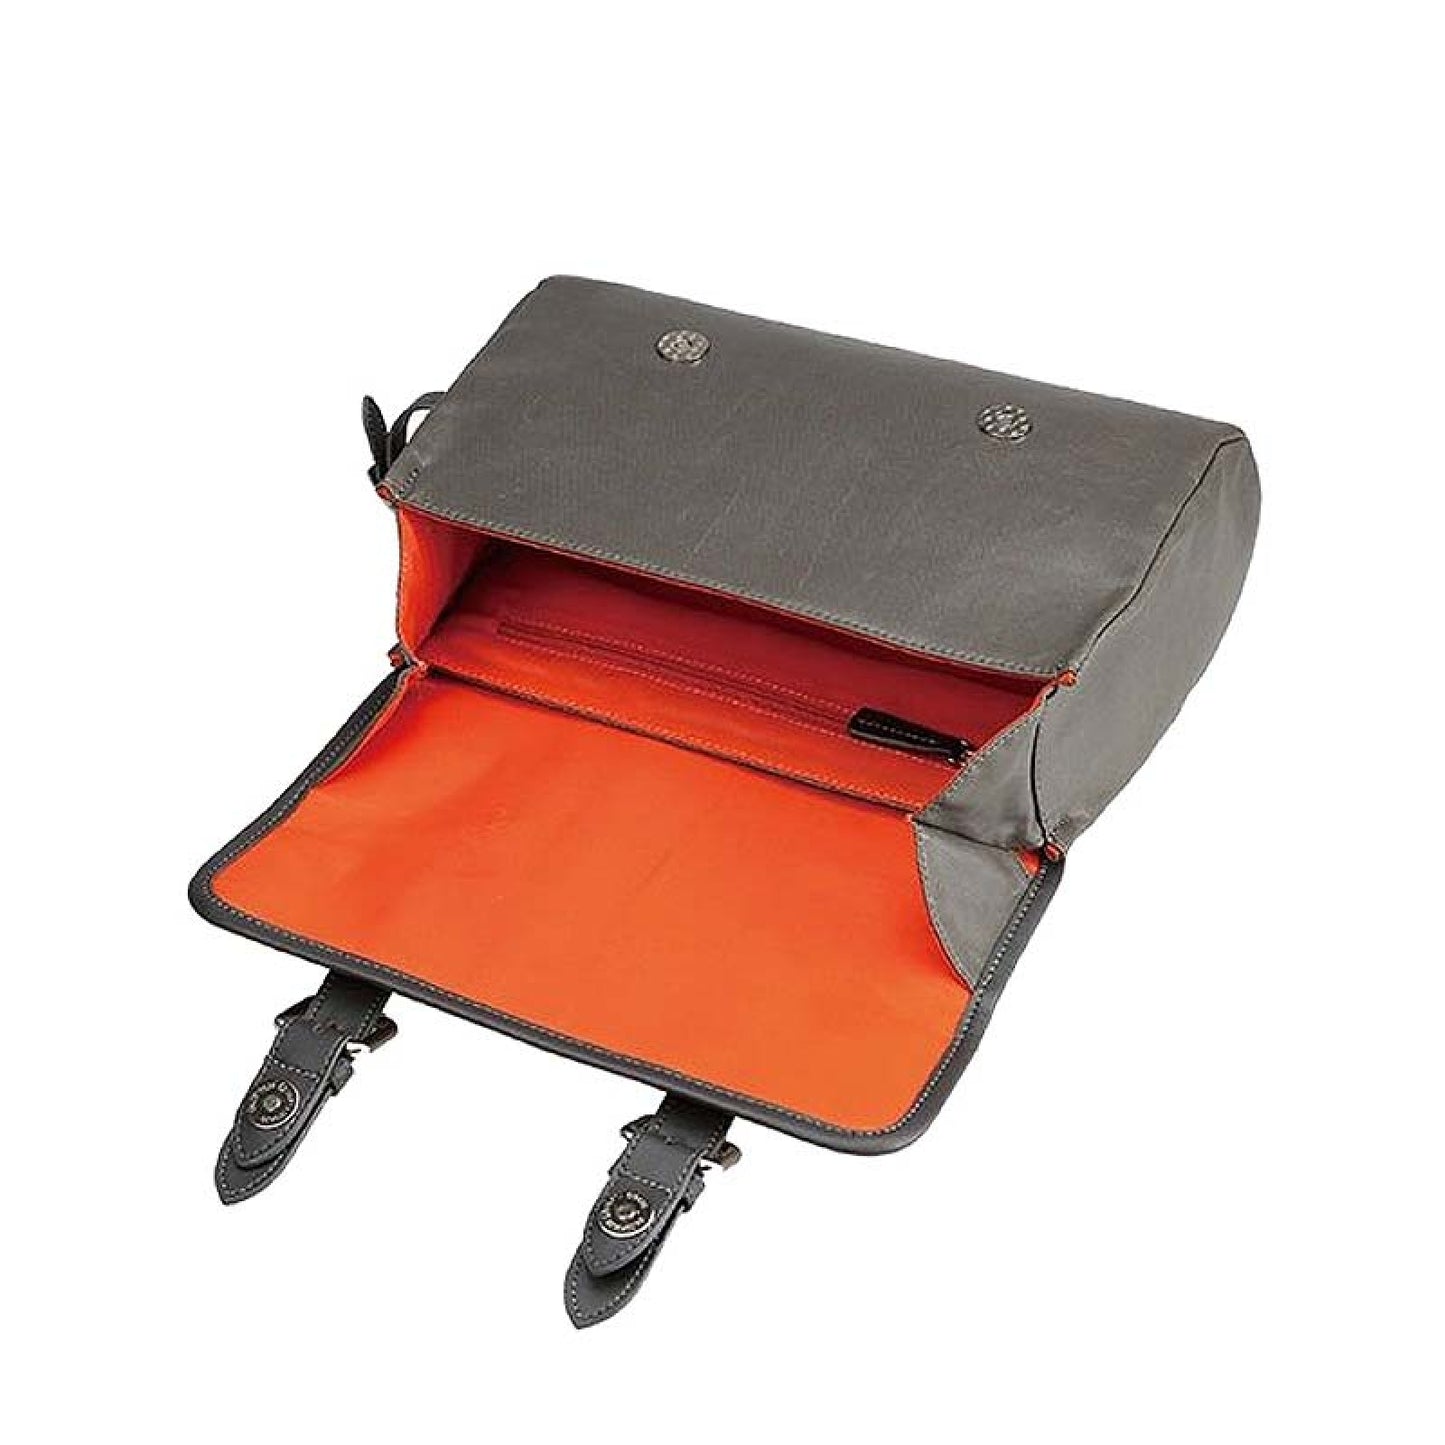 Kunstledertasche für Gepäckträger mit Umhängegurt | 10x28x18 cm